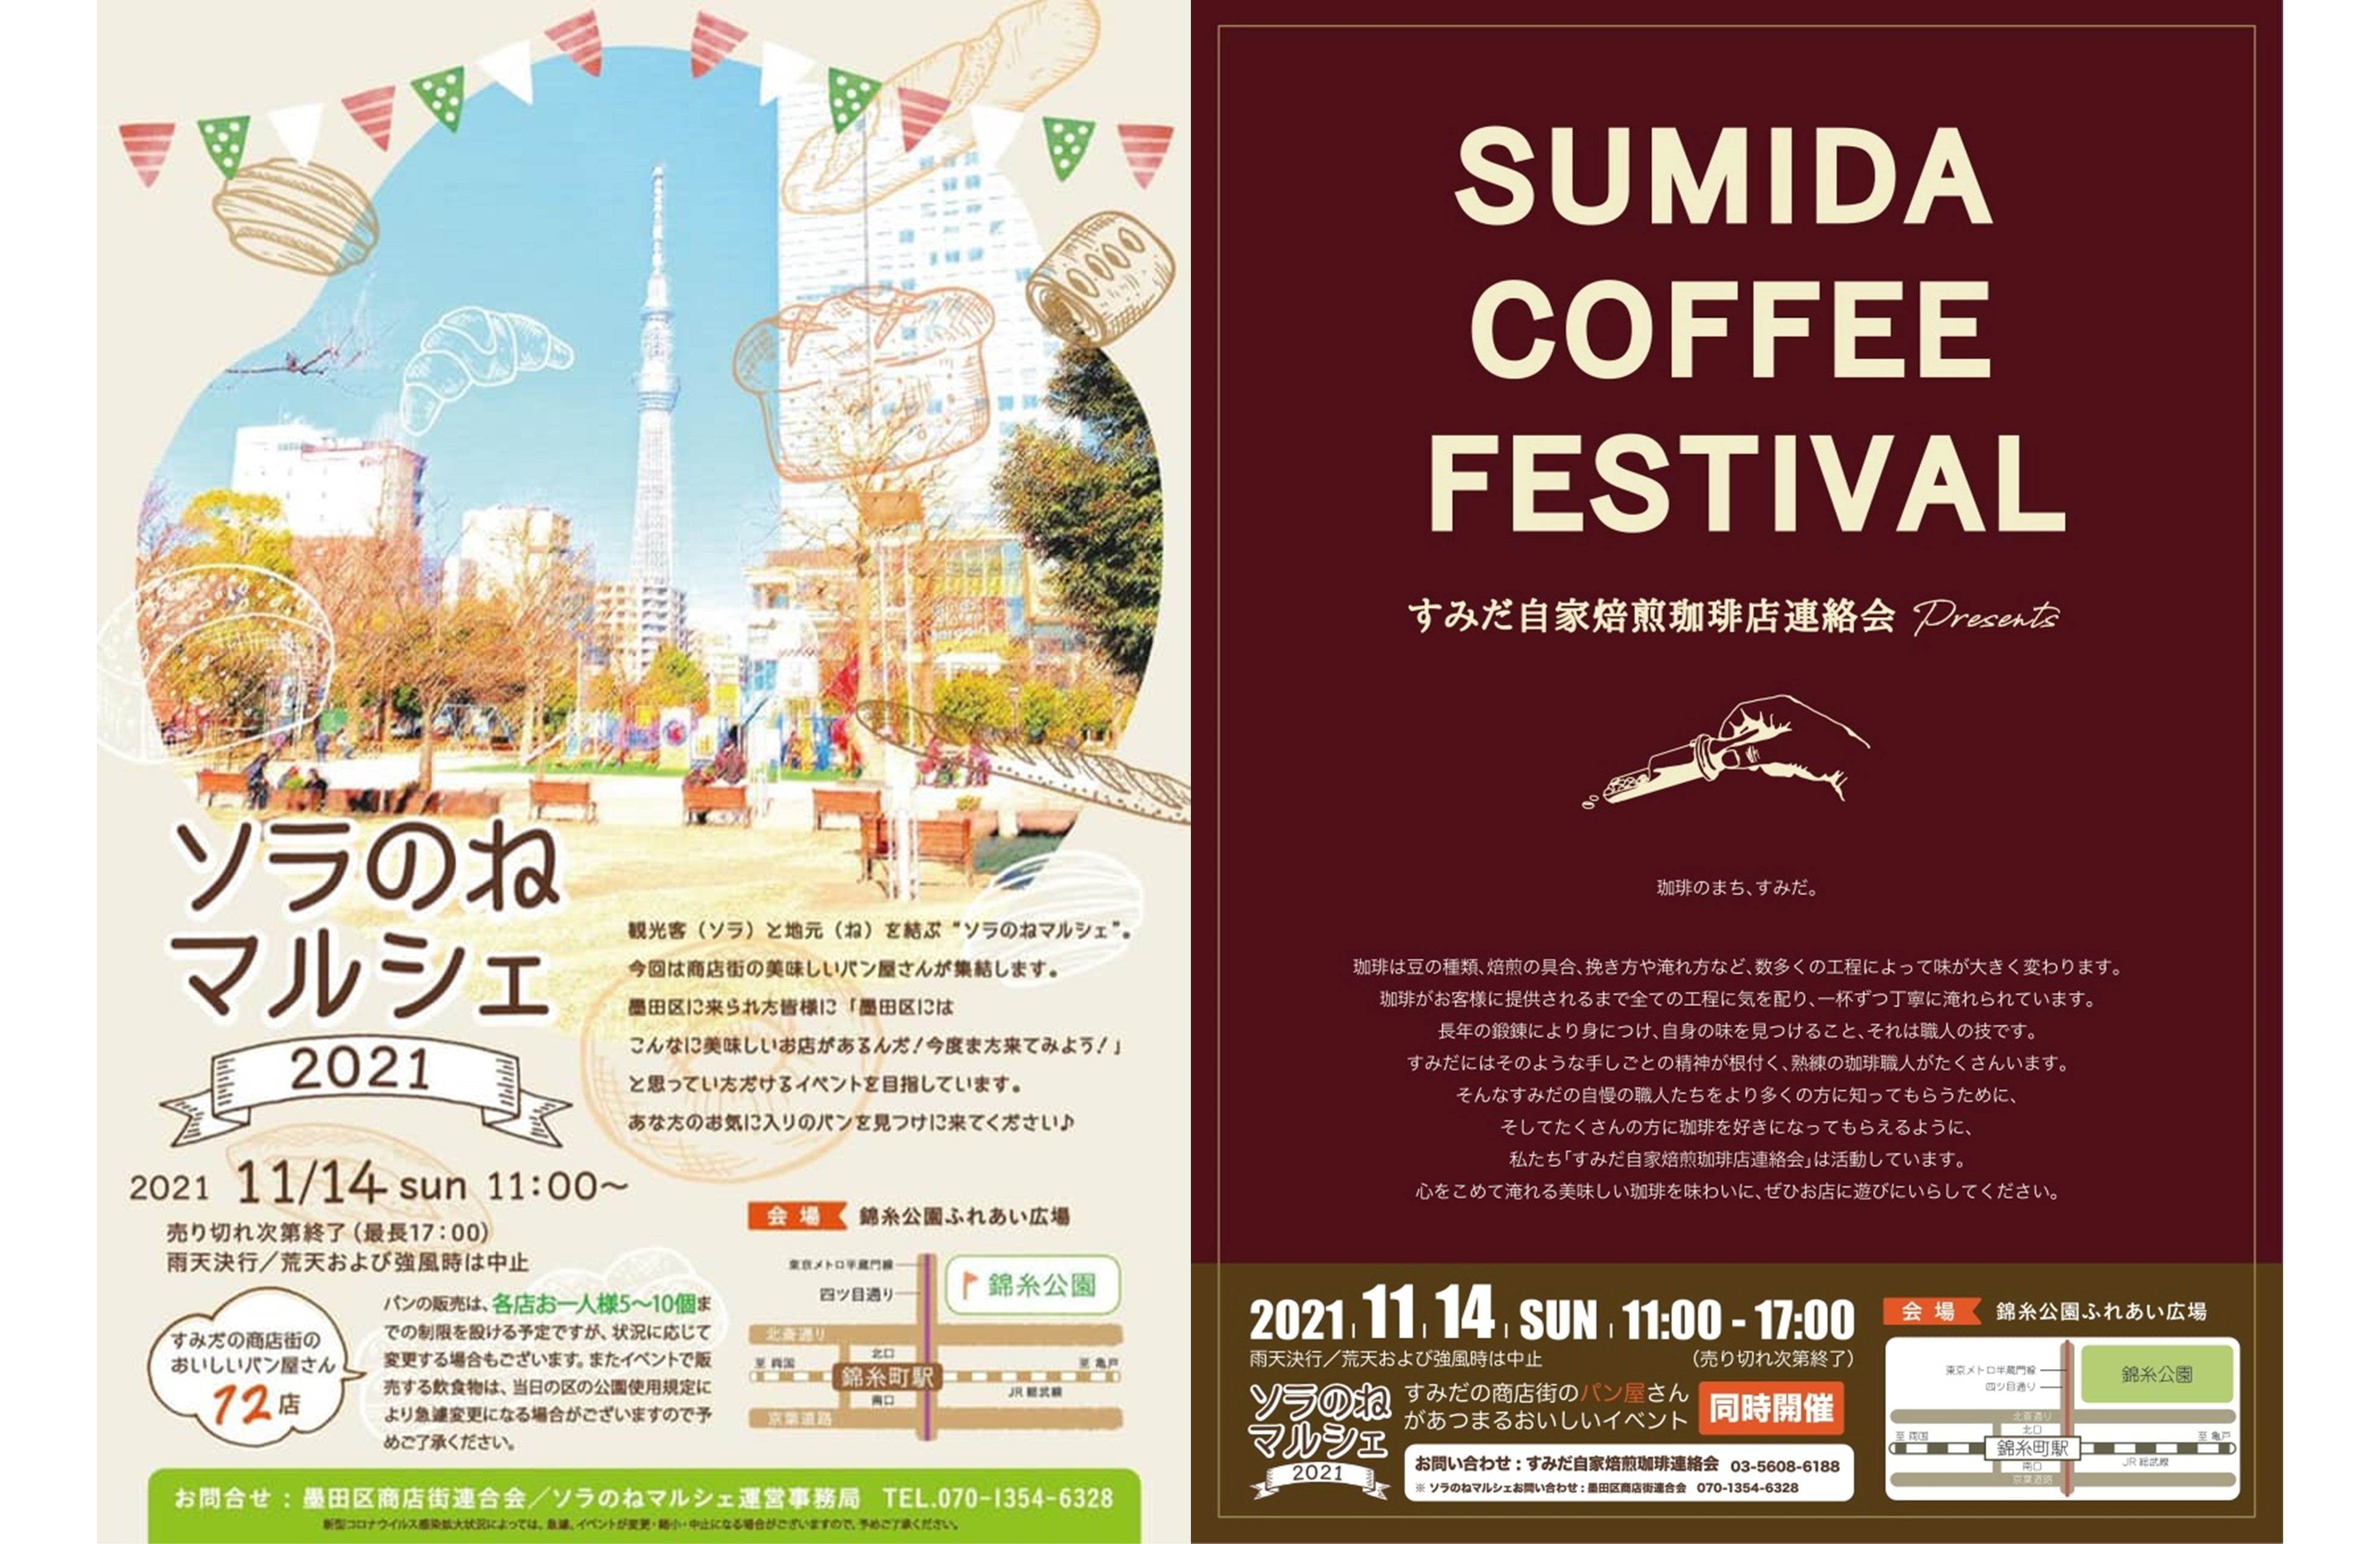 ーすみだ パン・コーヒー祭り2021ー